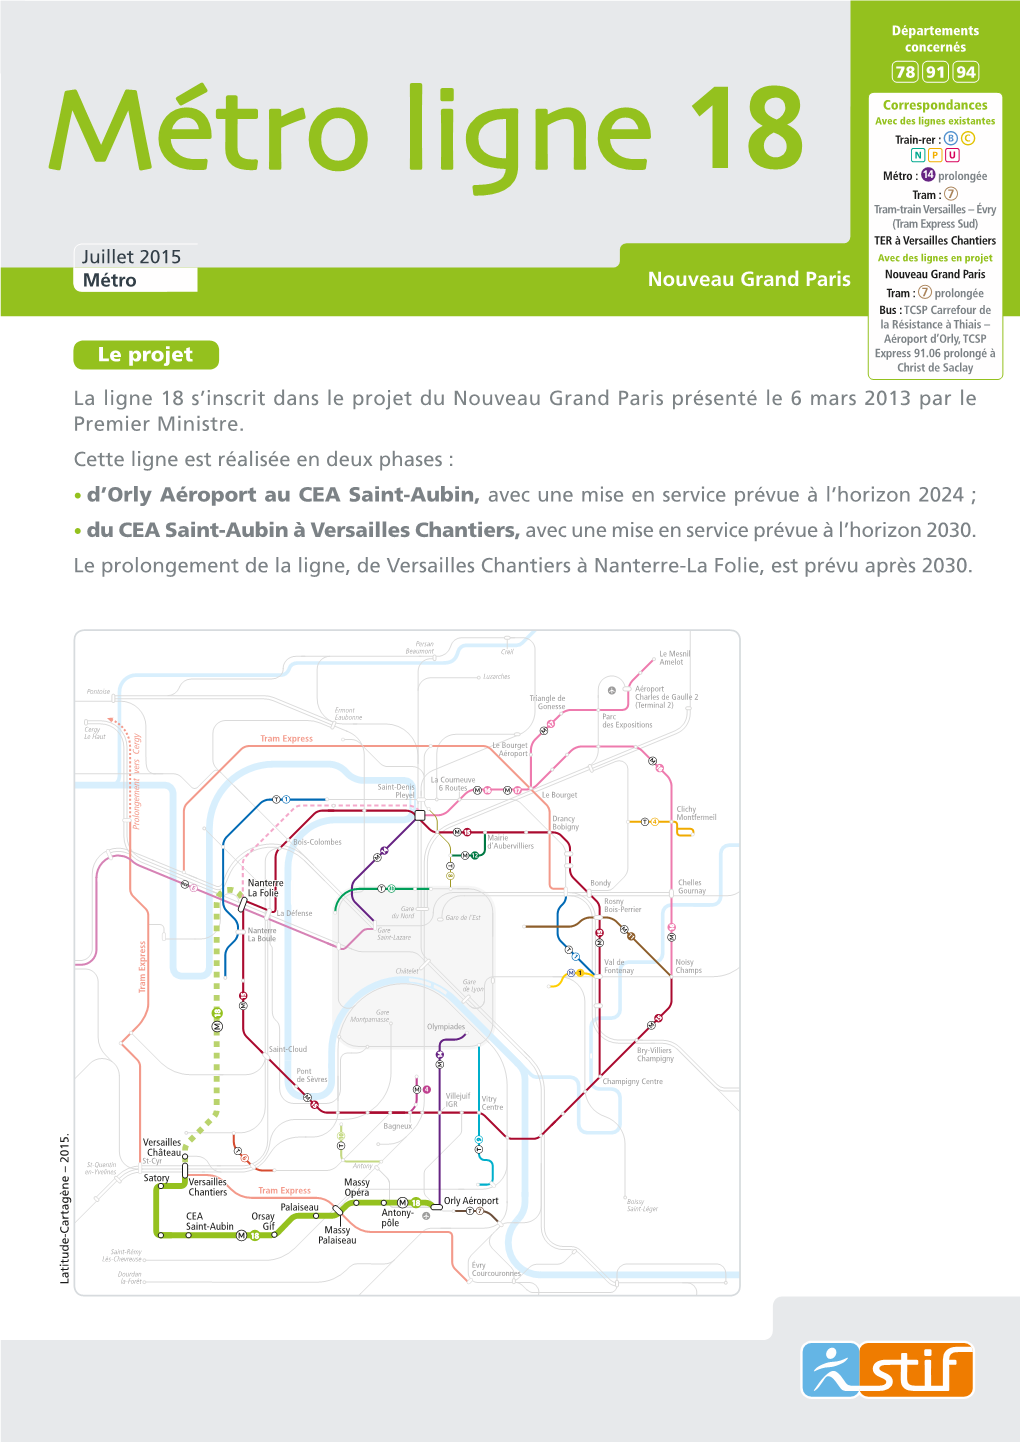 Métro Ligne 18 • Nouveau Grand Paris Juillet 2015 Concernés 78 91 94